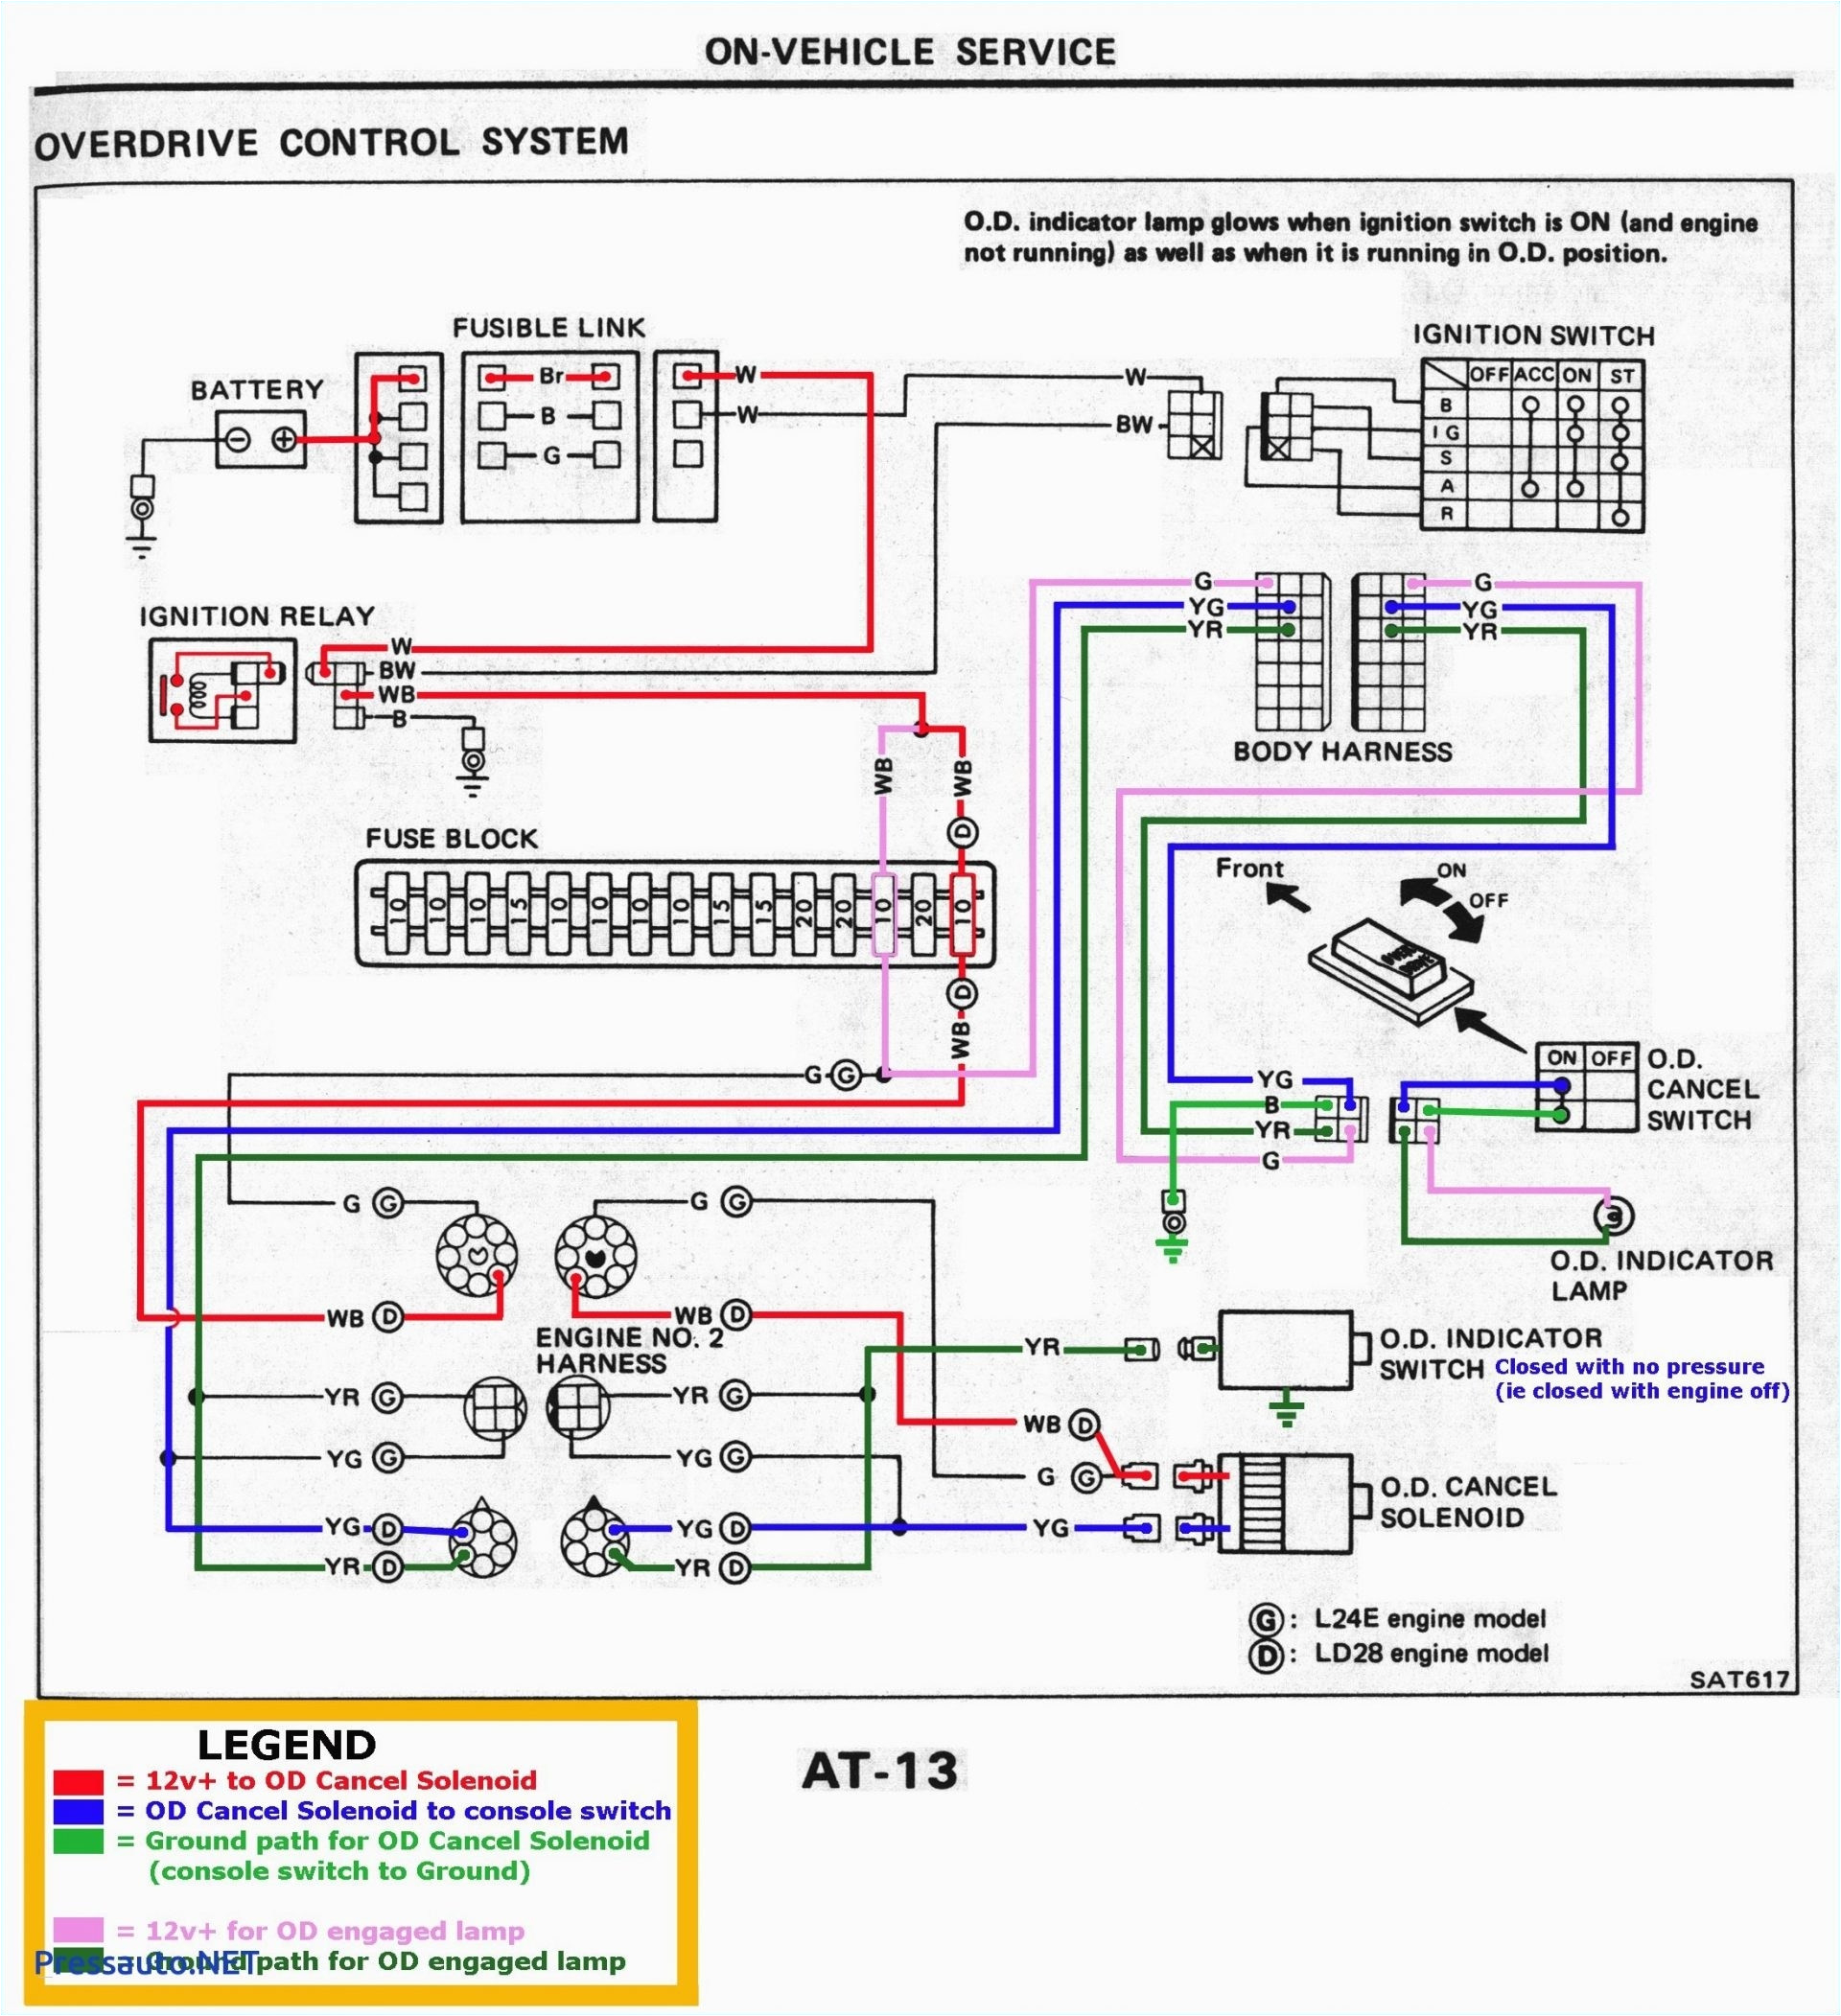 proximity switch wiring diagram inspirational prox sensor wiring diagram free image wiring diagram engine wire